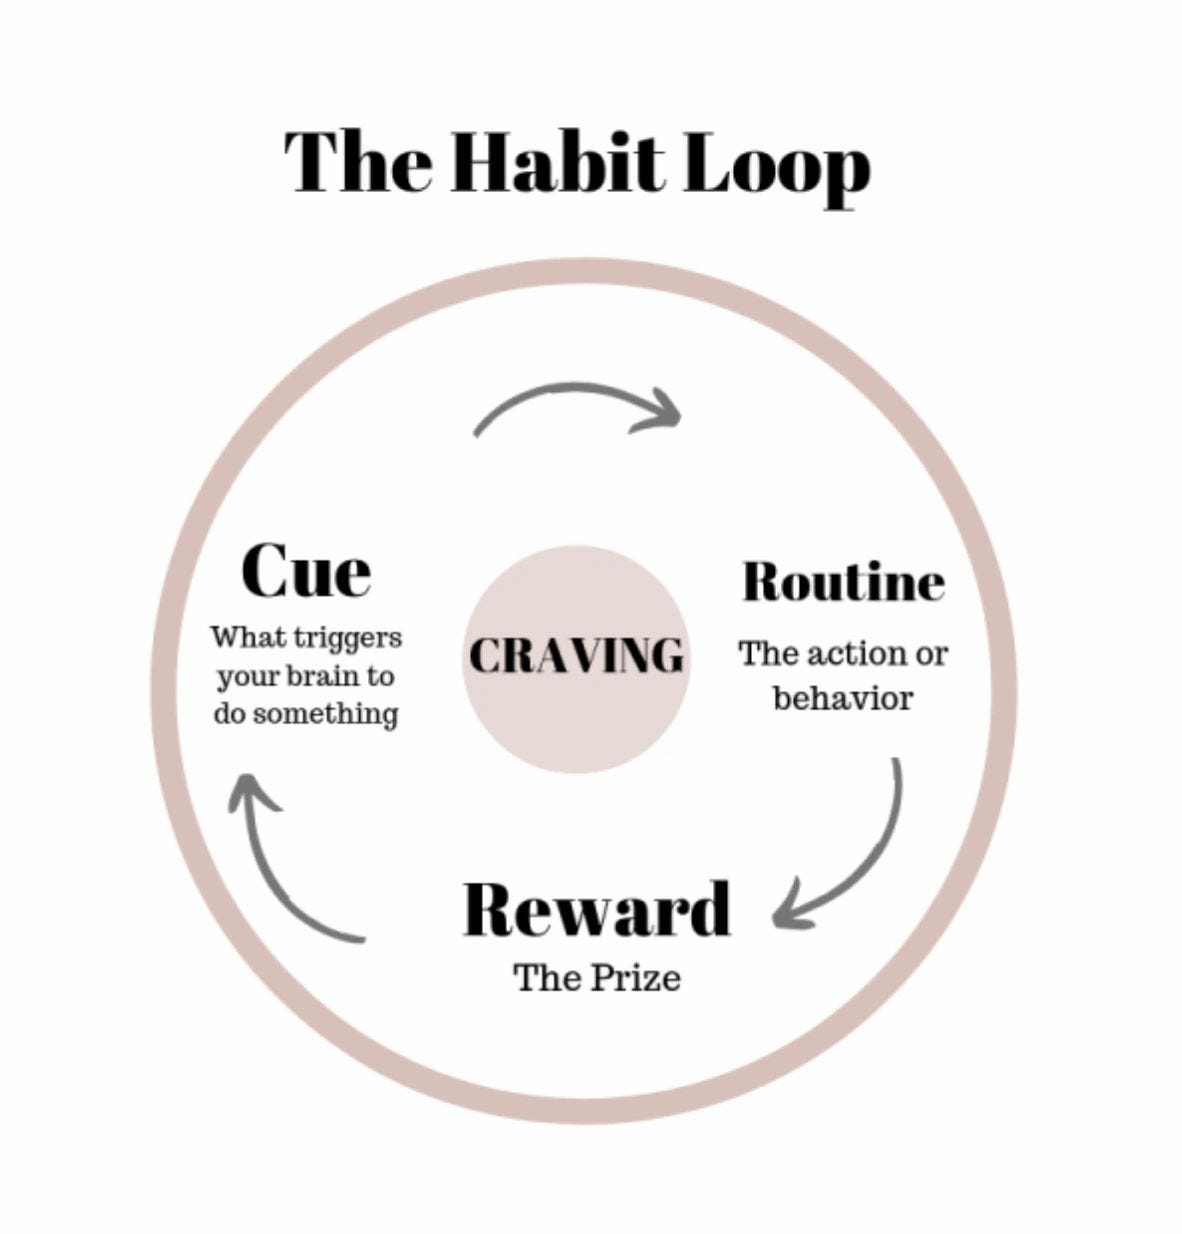 Cue, Routine (Habit), Reward - The Formula for Positive Change!